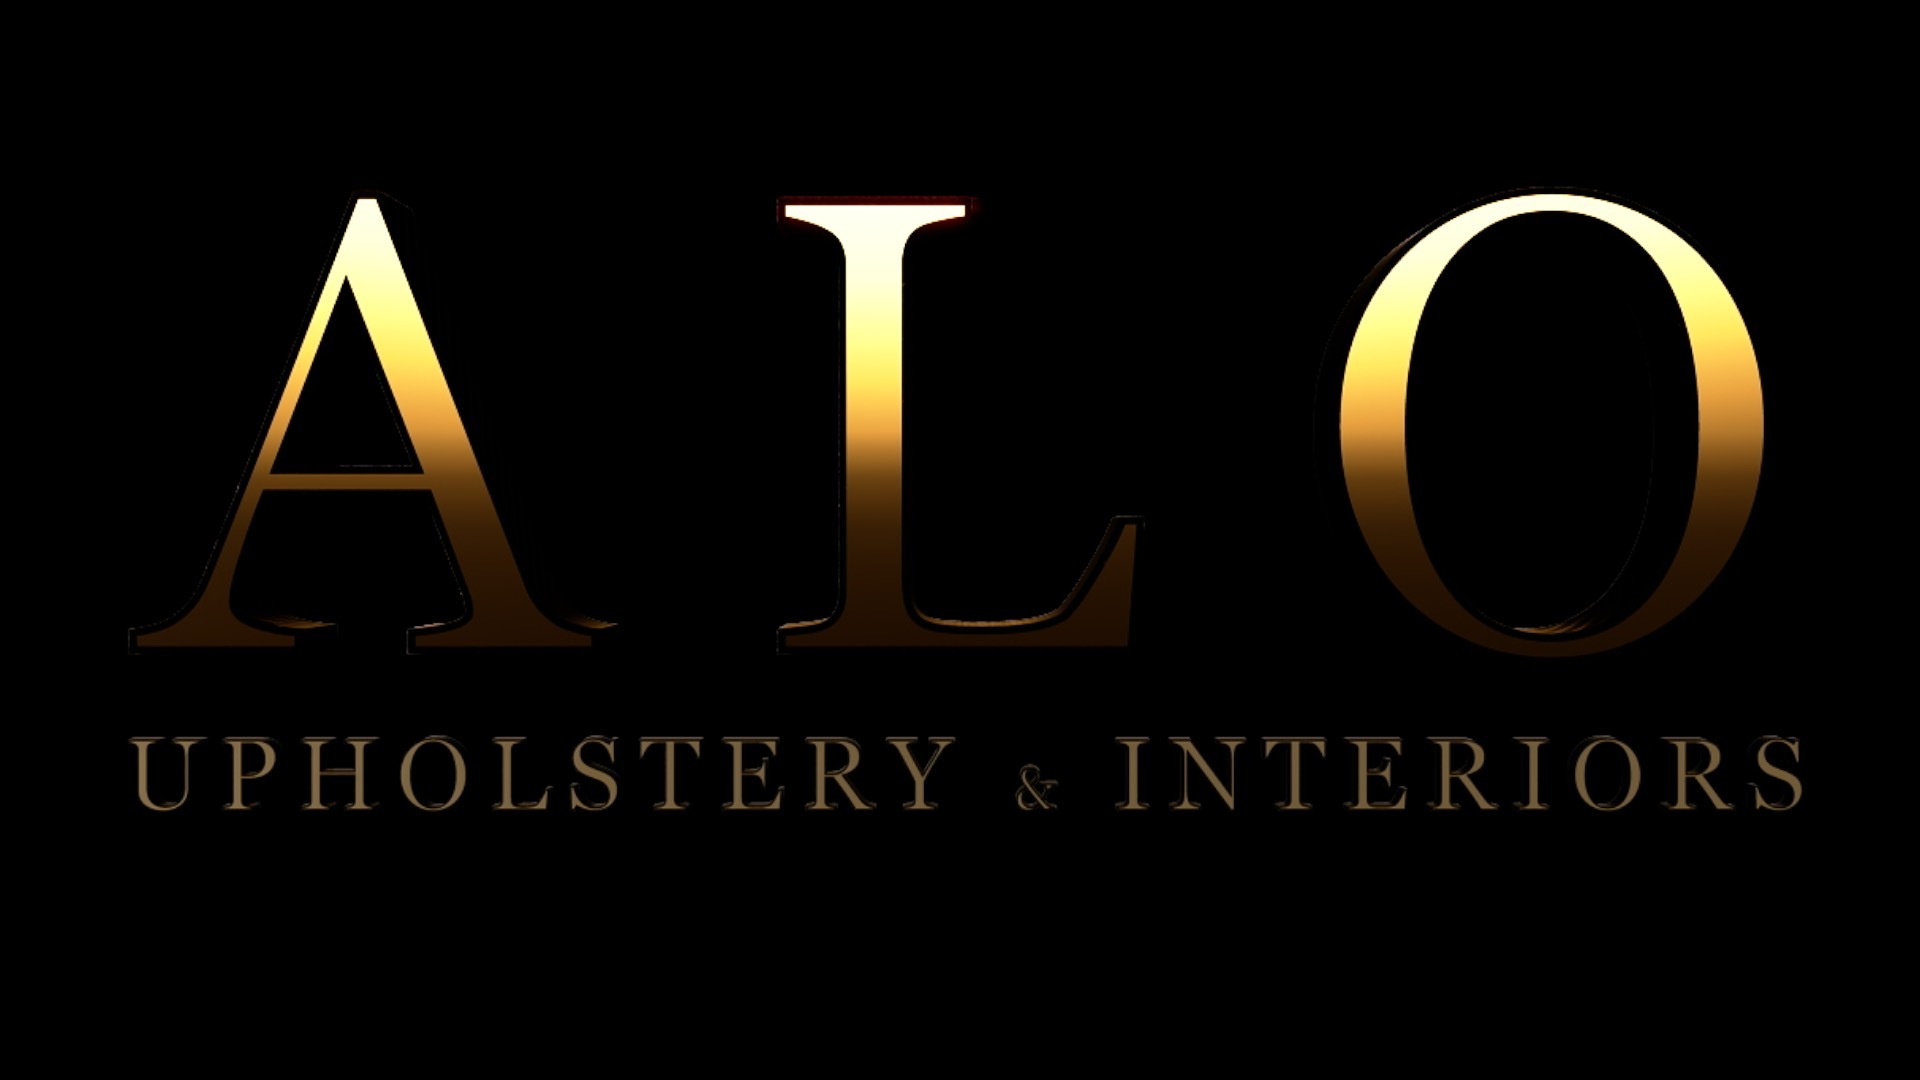 Alo Upholstery & Interiors's logo